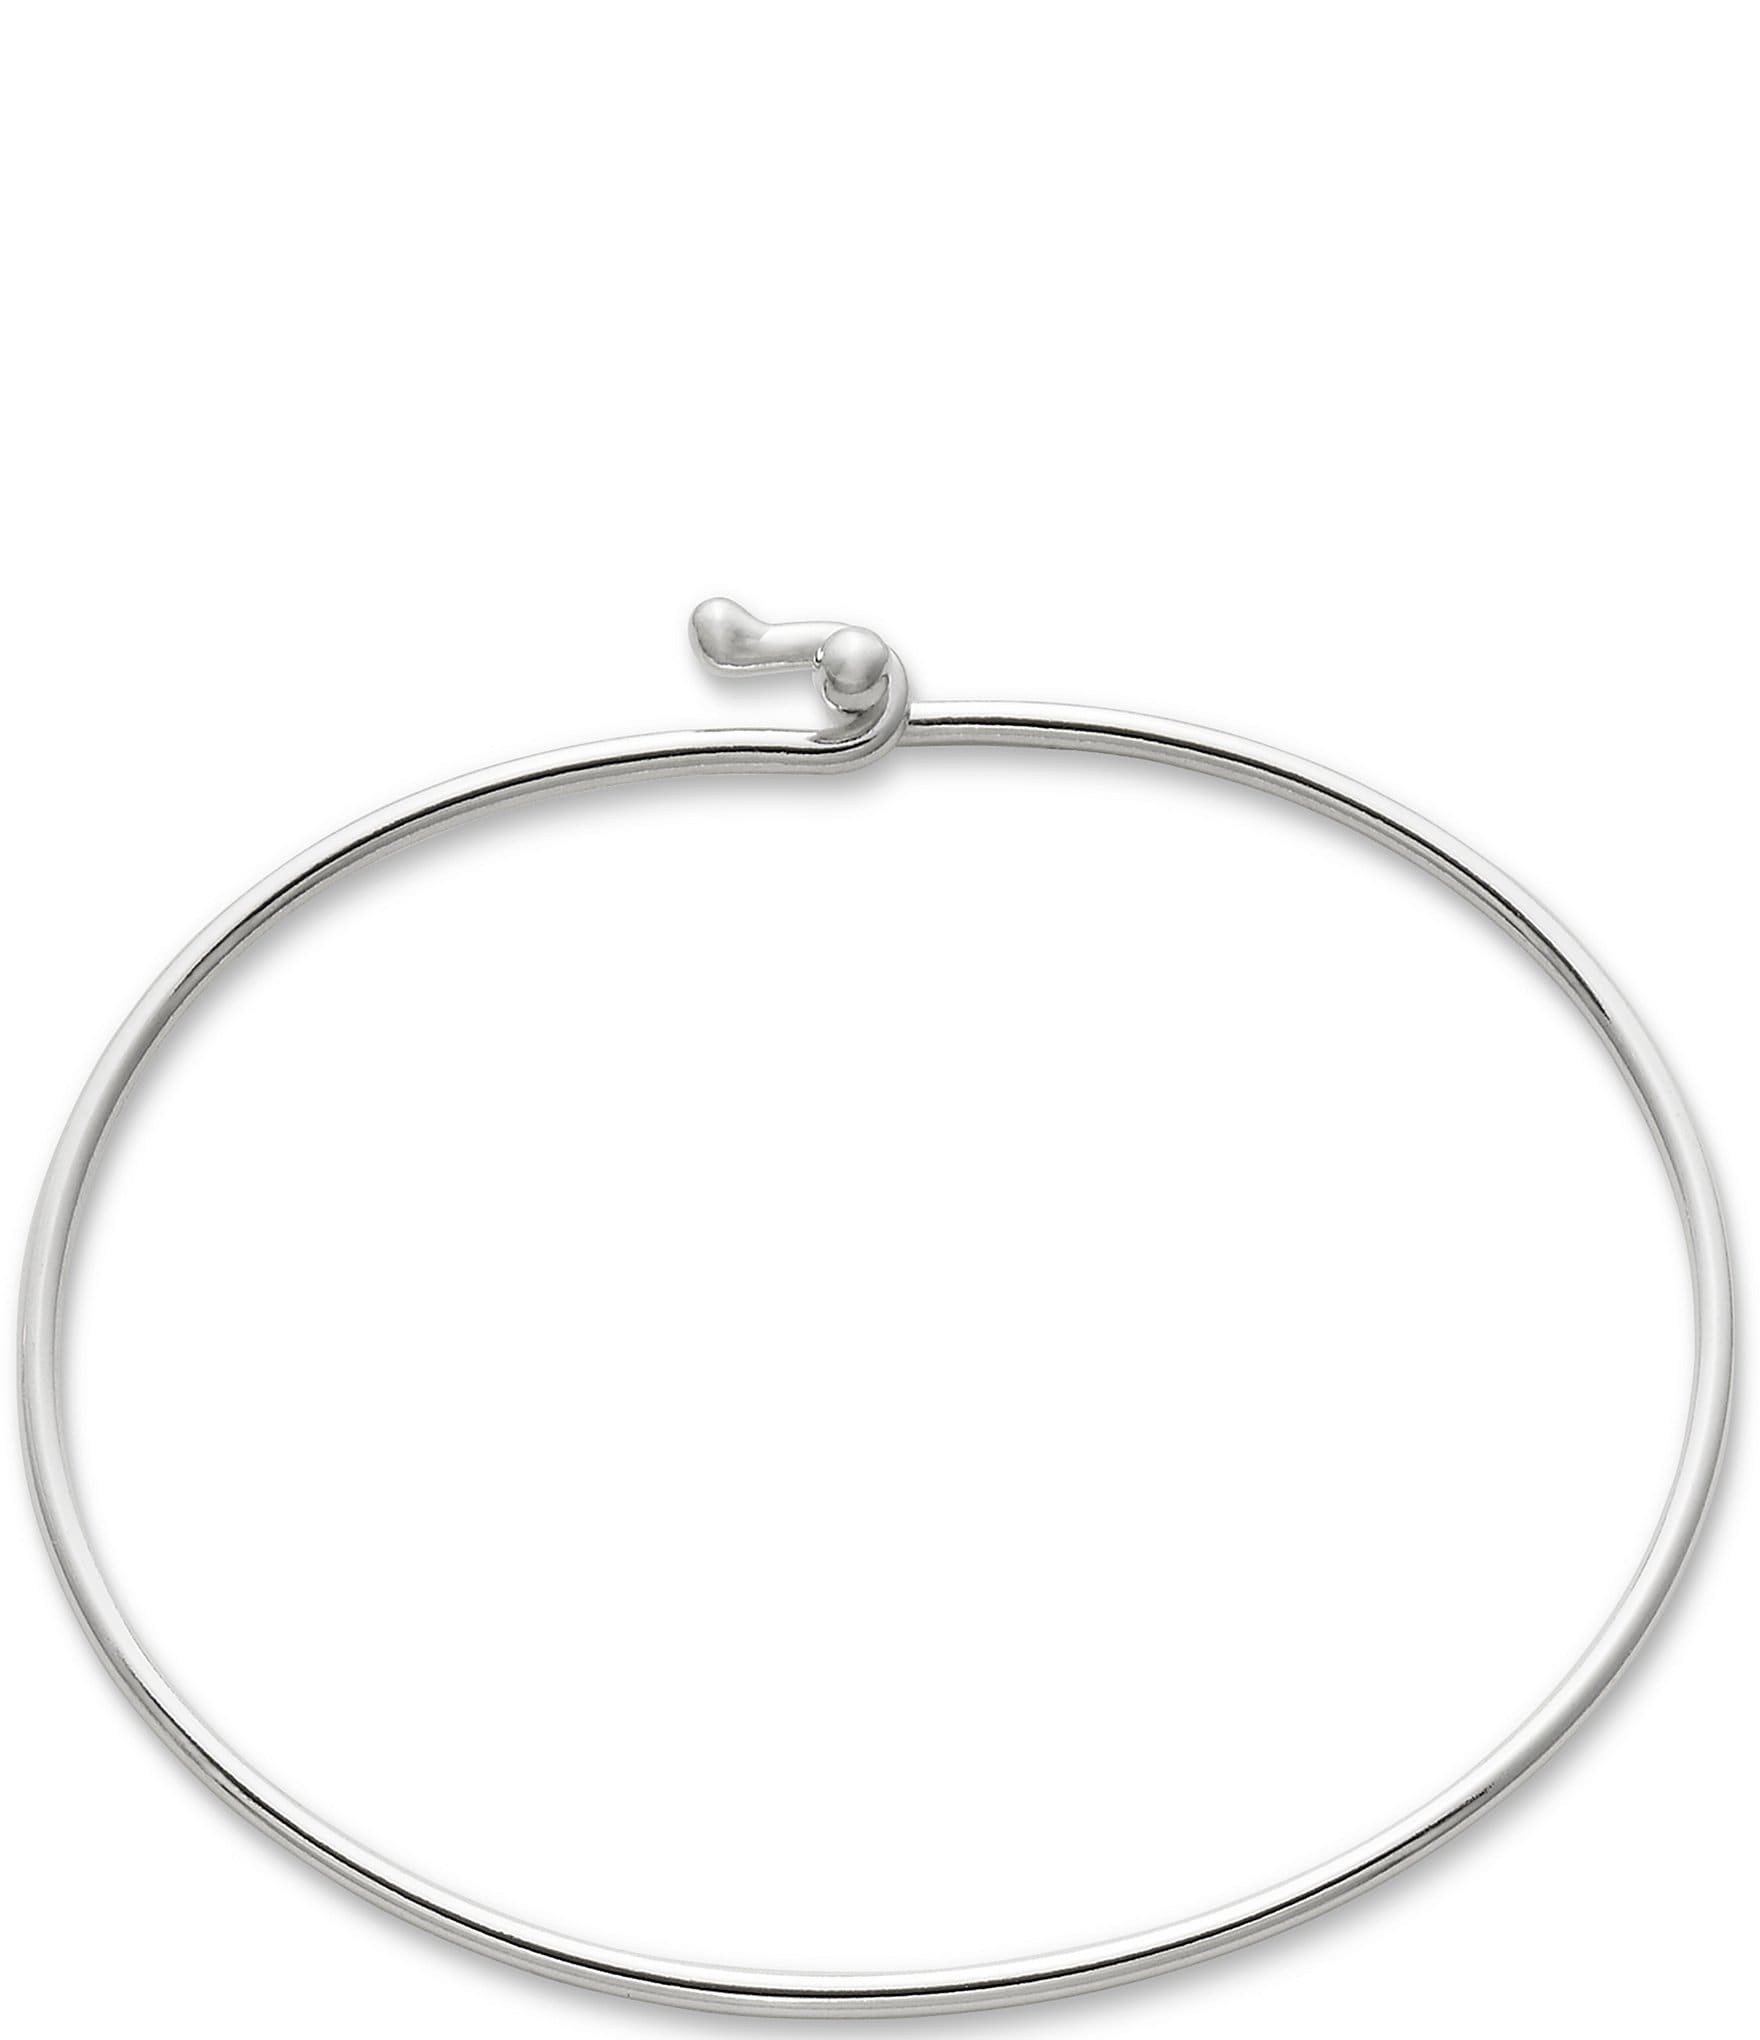 James Avery Hook On Sterling Silver Bracelet - XL